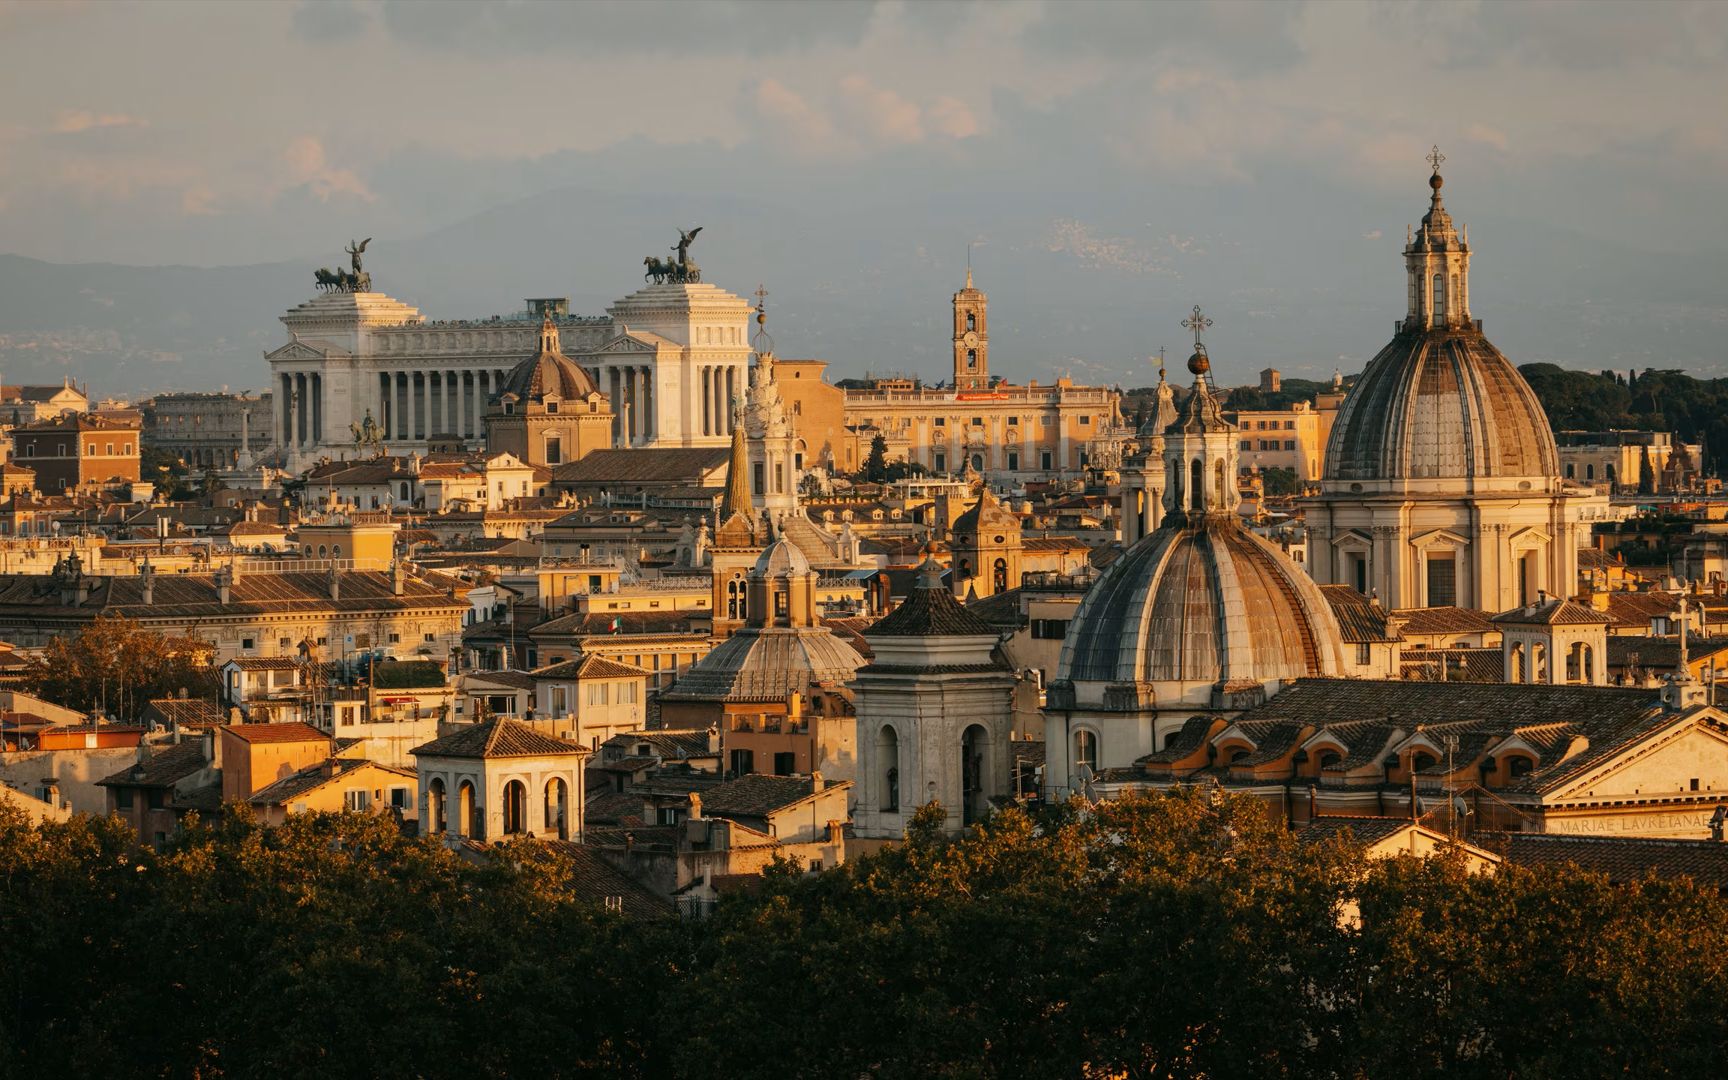 意大利热门旅游景点推荐:这座魔幻3d城国家,等你来挑战!